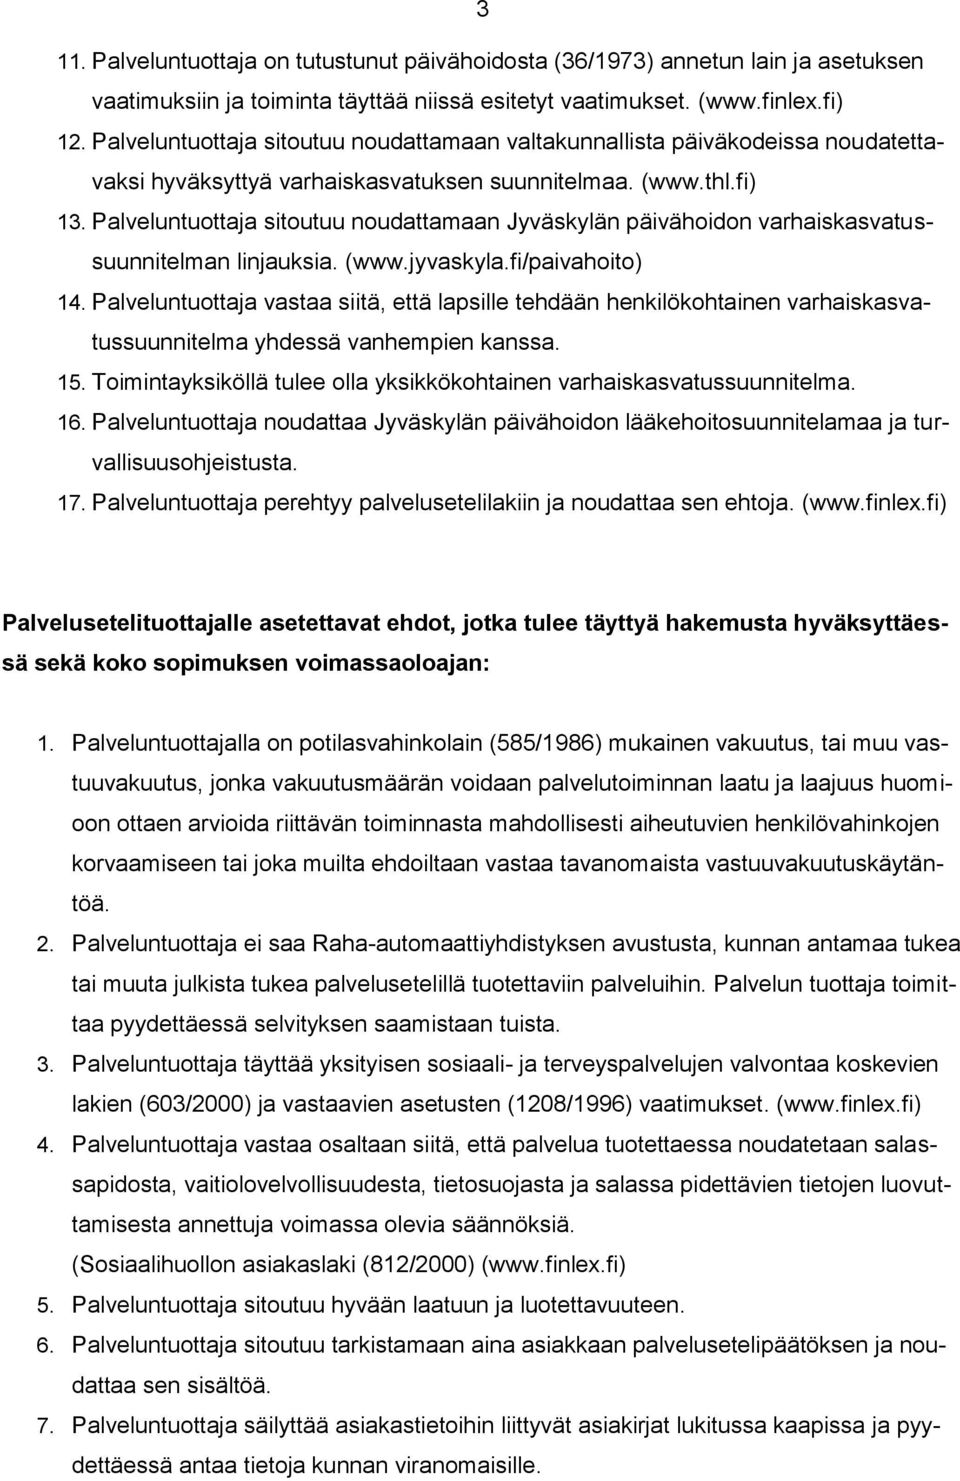 Palveluntuottaja sitoutuu noudattamaan Jyväskylän päivähoidon varhaiskasvatussuunnitelman linjauksia. (www.jyvaskyla.fi/paivahoito) 14.